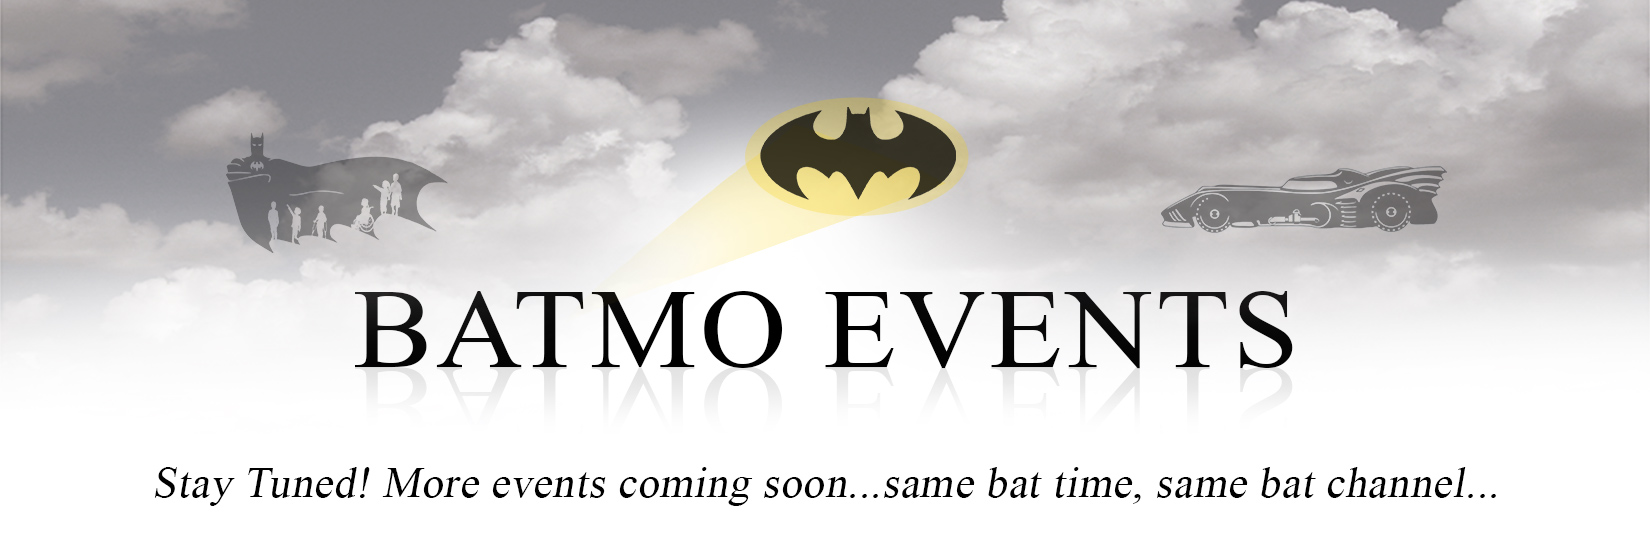 Batmo Events